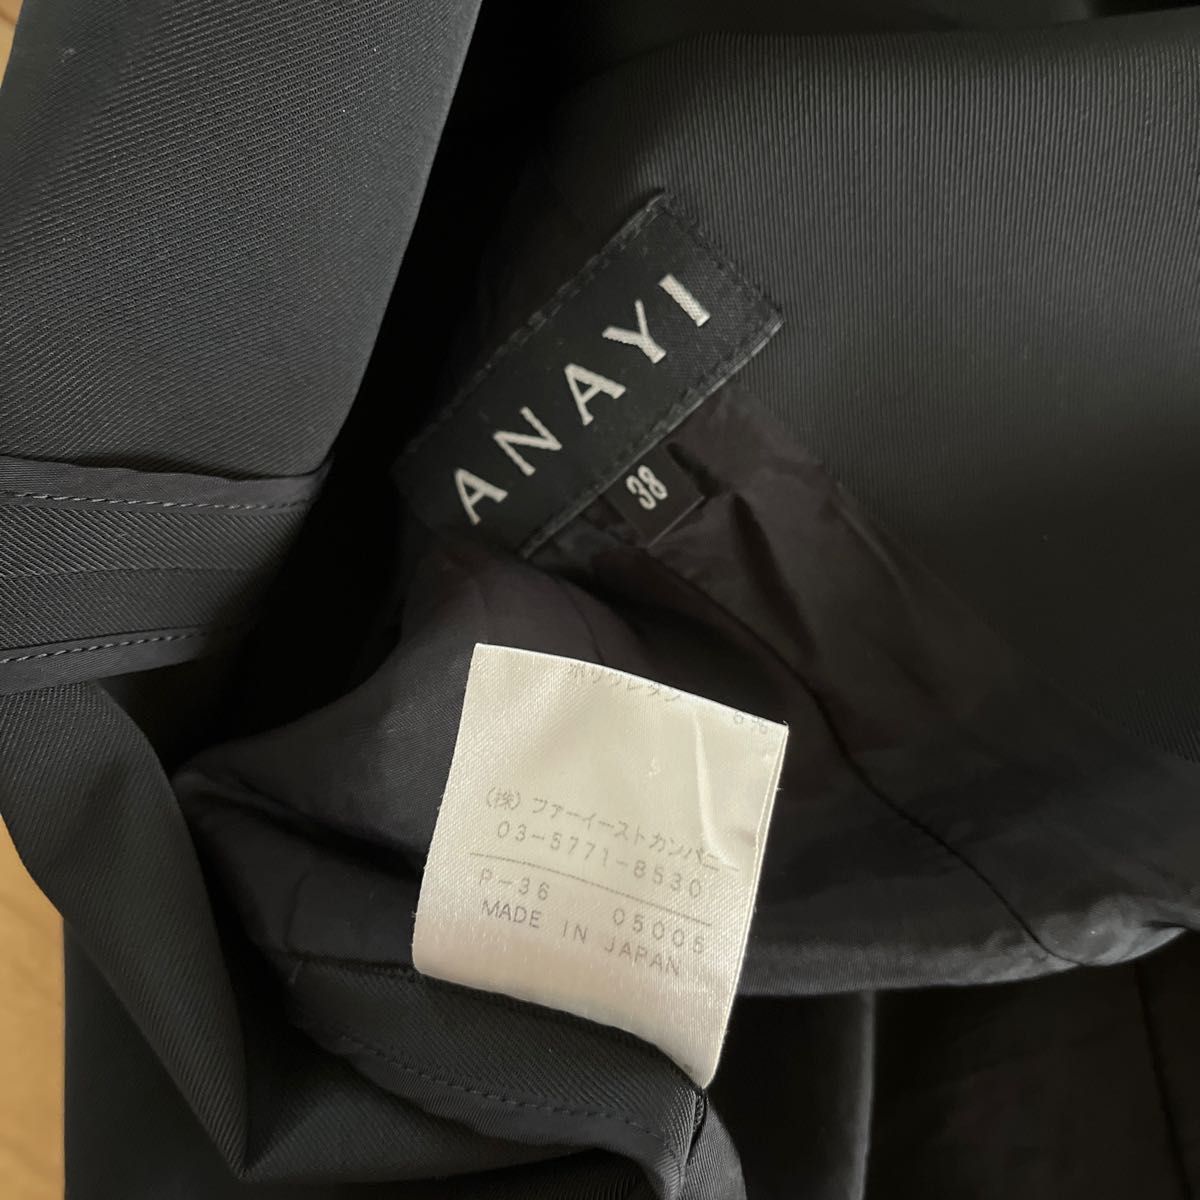 ANAYI アナイ　テーラードジャケット　38 9号　M 上着　羽織り　アウター　ブランド　人気　素敵　オフィス　スーツ　春　秋